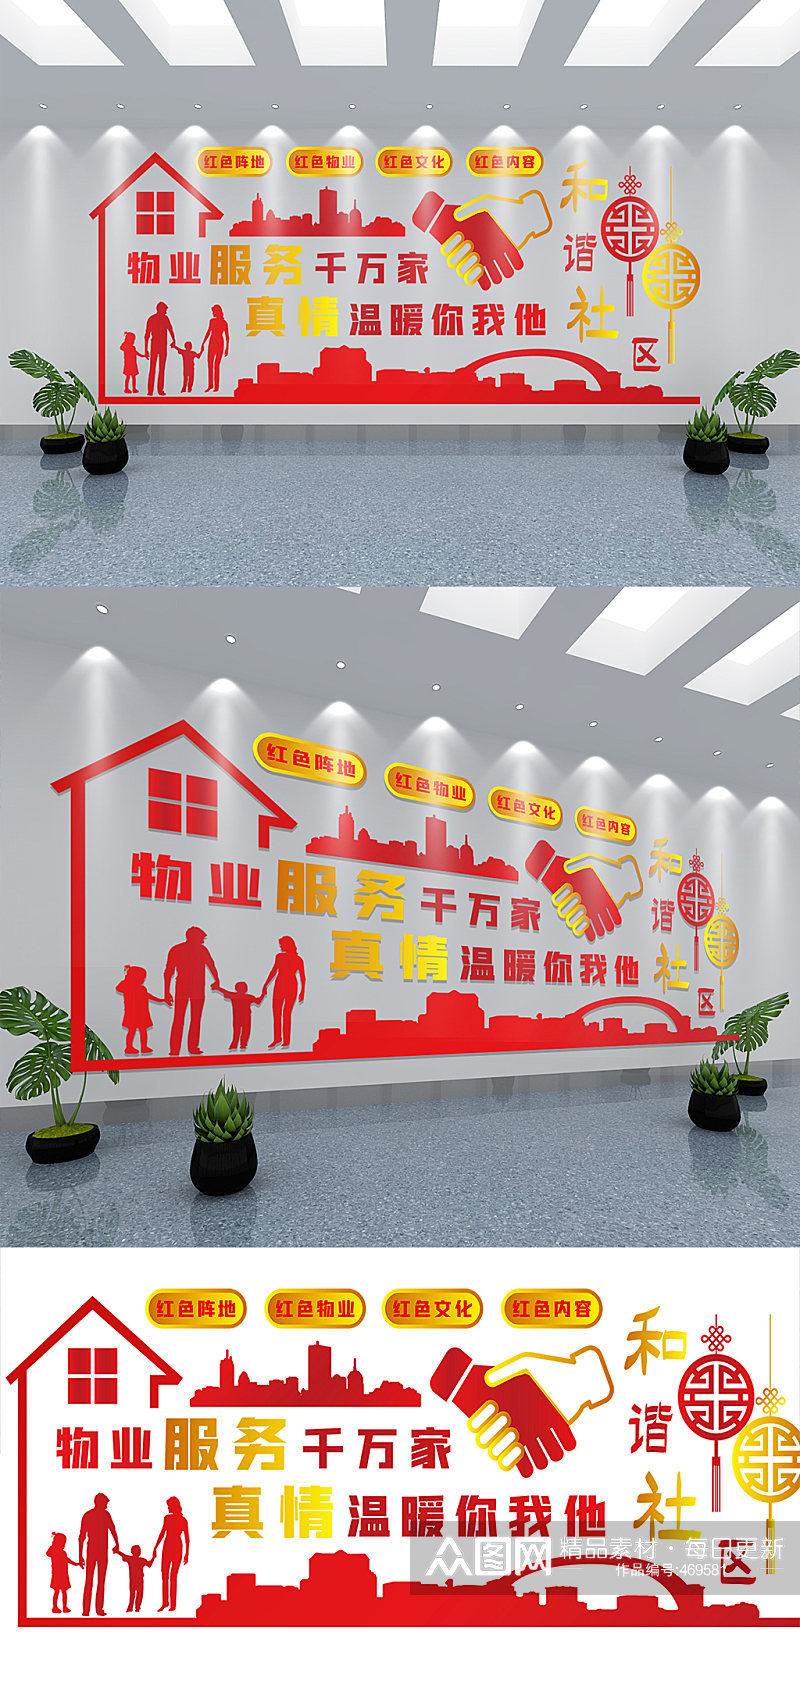 红色社区物业公司企业文化墙设计素材